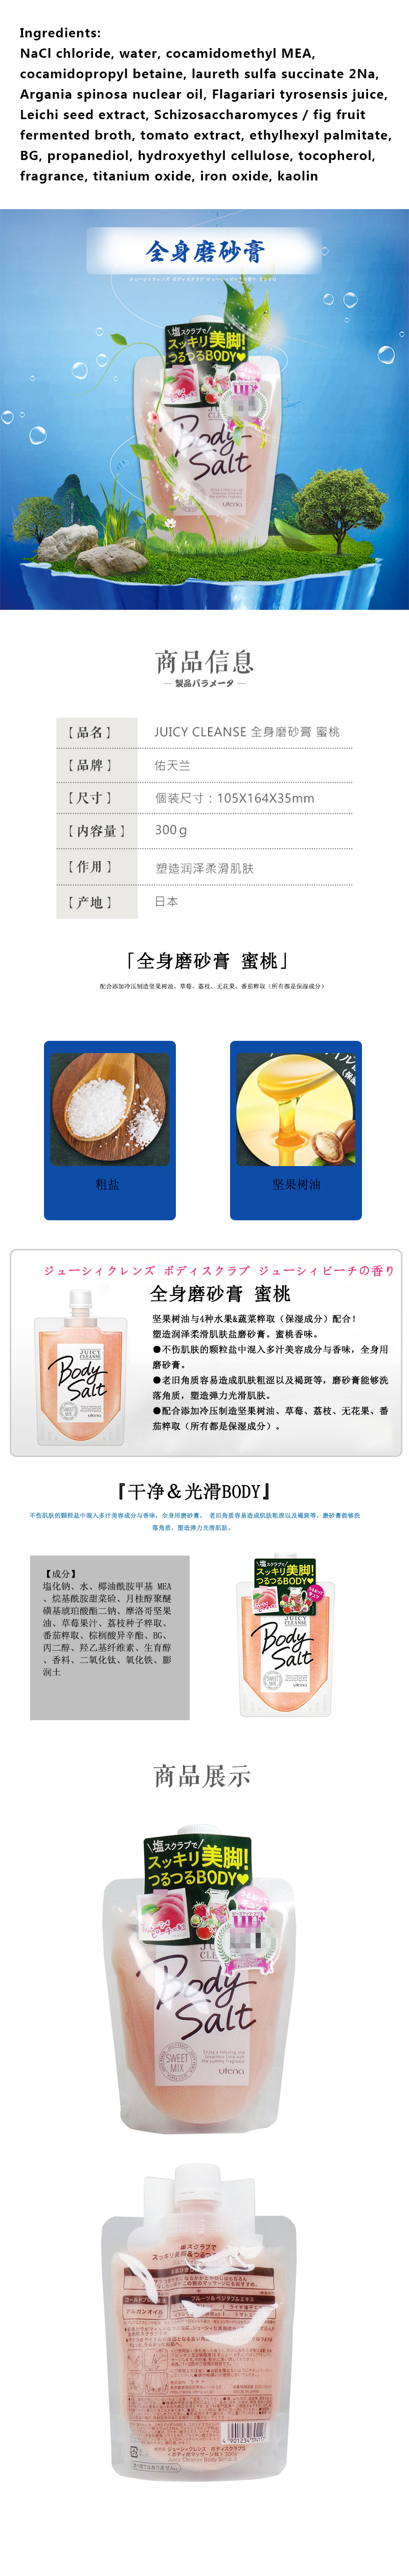 【日本直邮】日本佑天兰甜蜜浆果混合身体磨砂膏300g